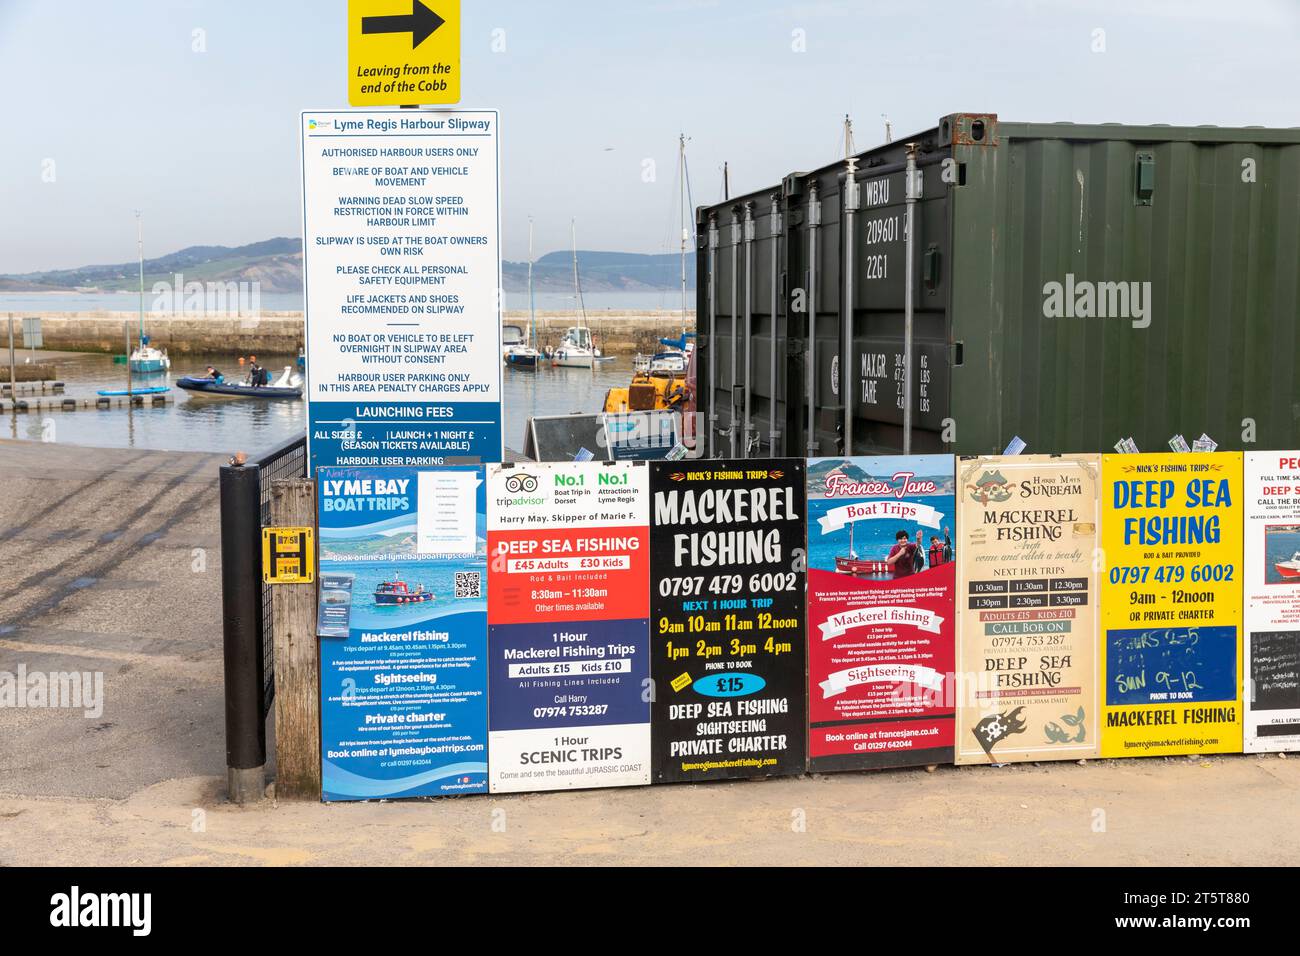 Lyme Regis Dorset, gite in barca e pesca promosse al Cobb, Inghilterra, Regno Unito, 2023 Foto Stock